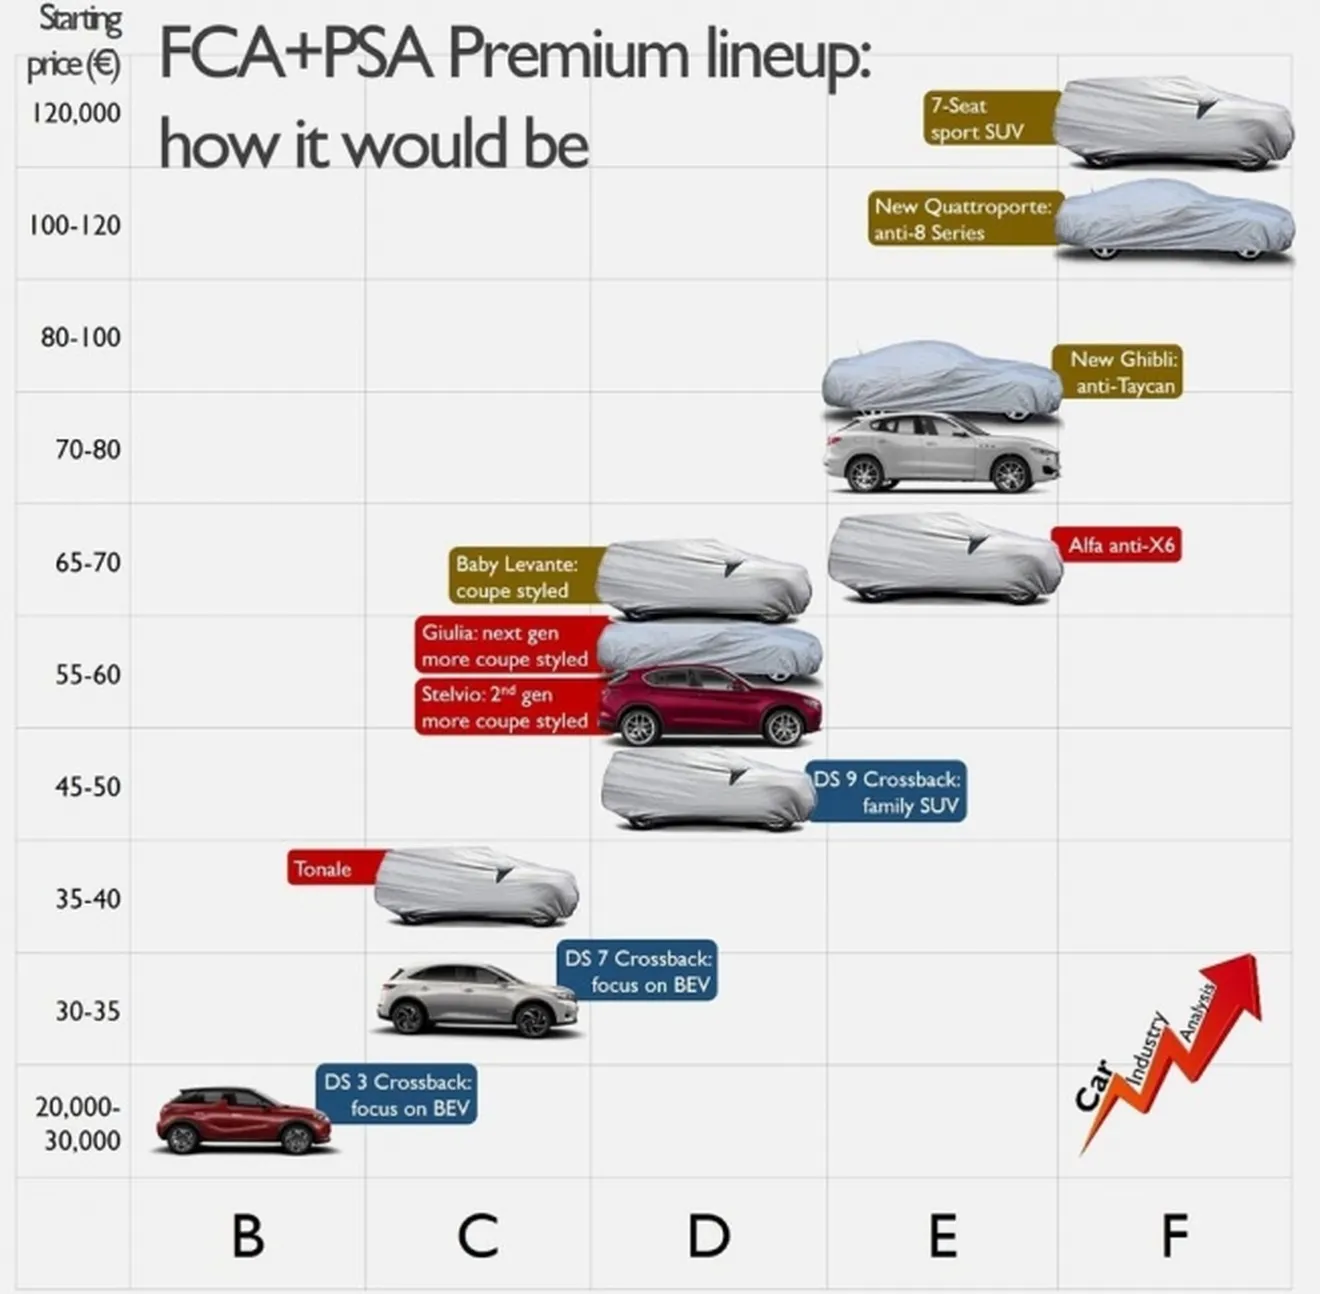 La gama premium de FCA y PSA